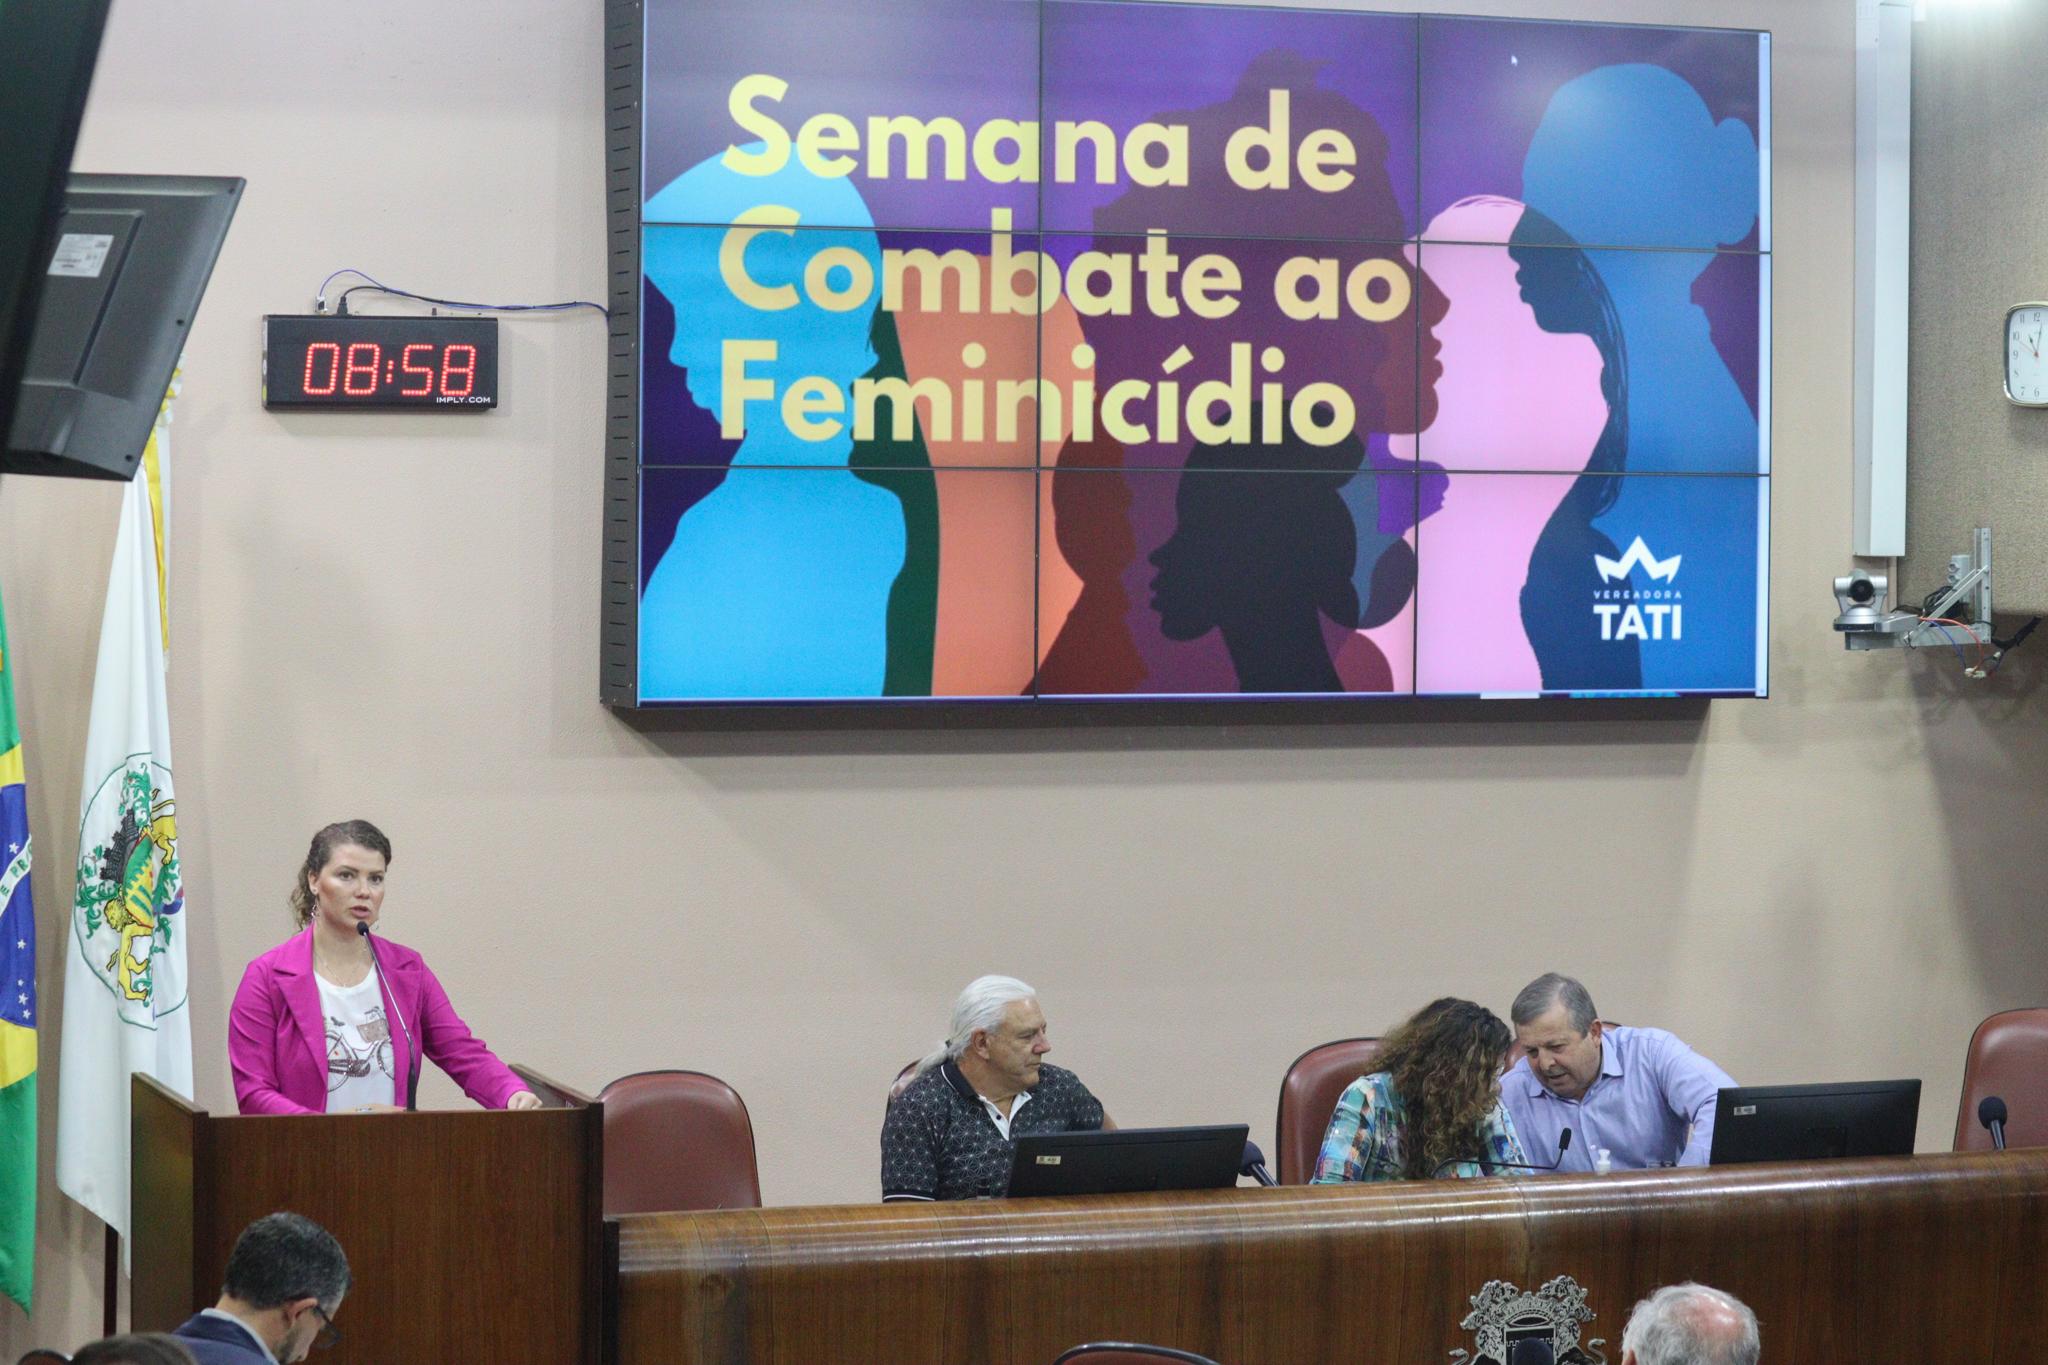 Semana de Combate ao Feminicídio ganha destaque na voz de Tatiane Frizzo